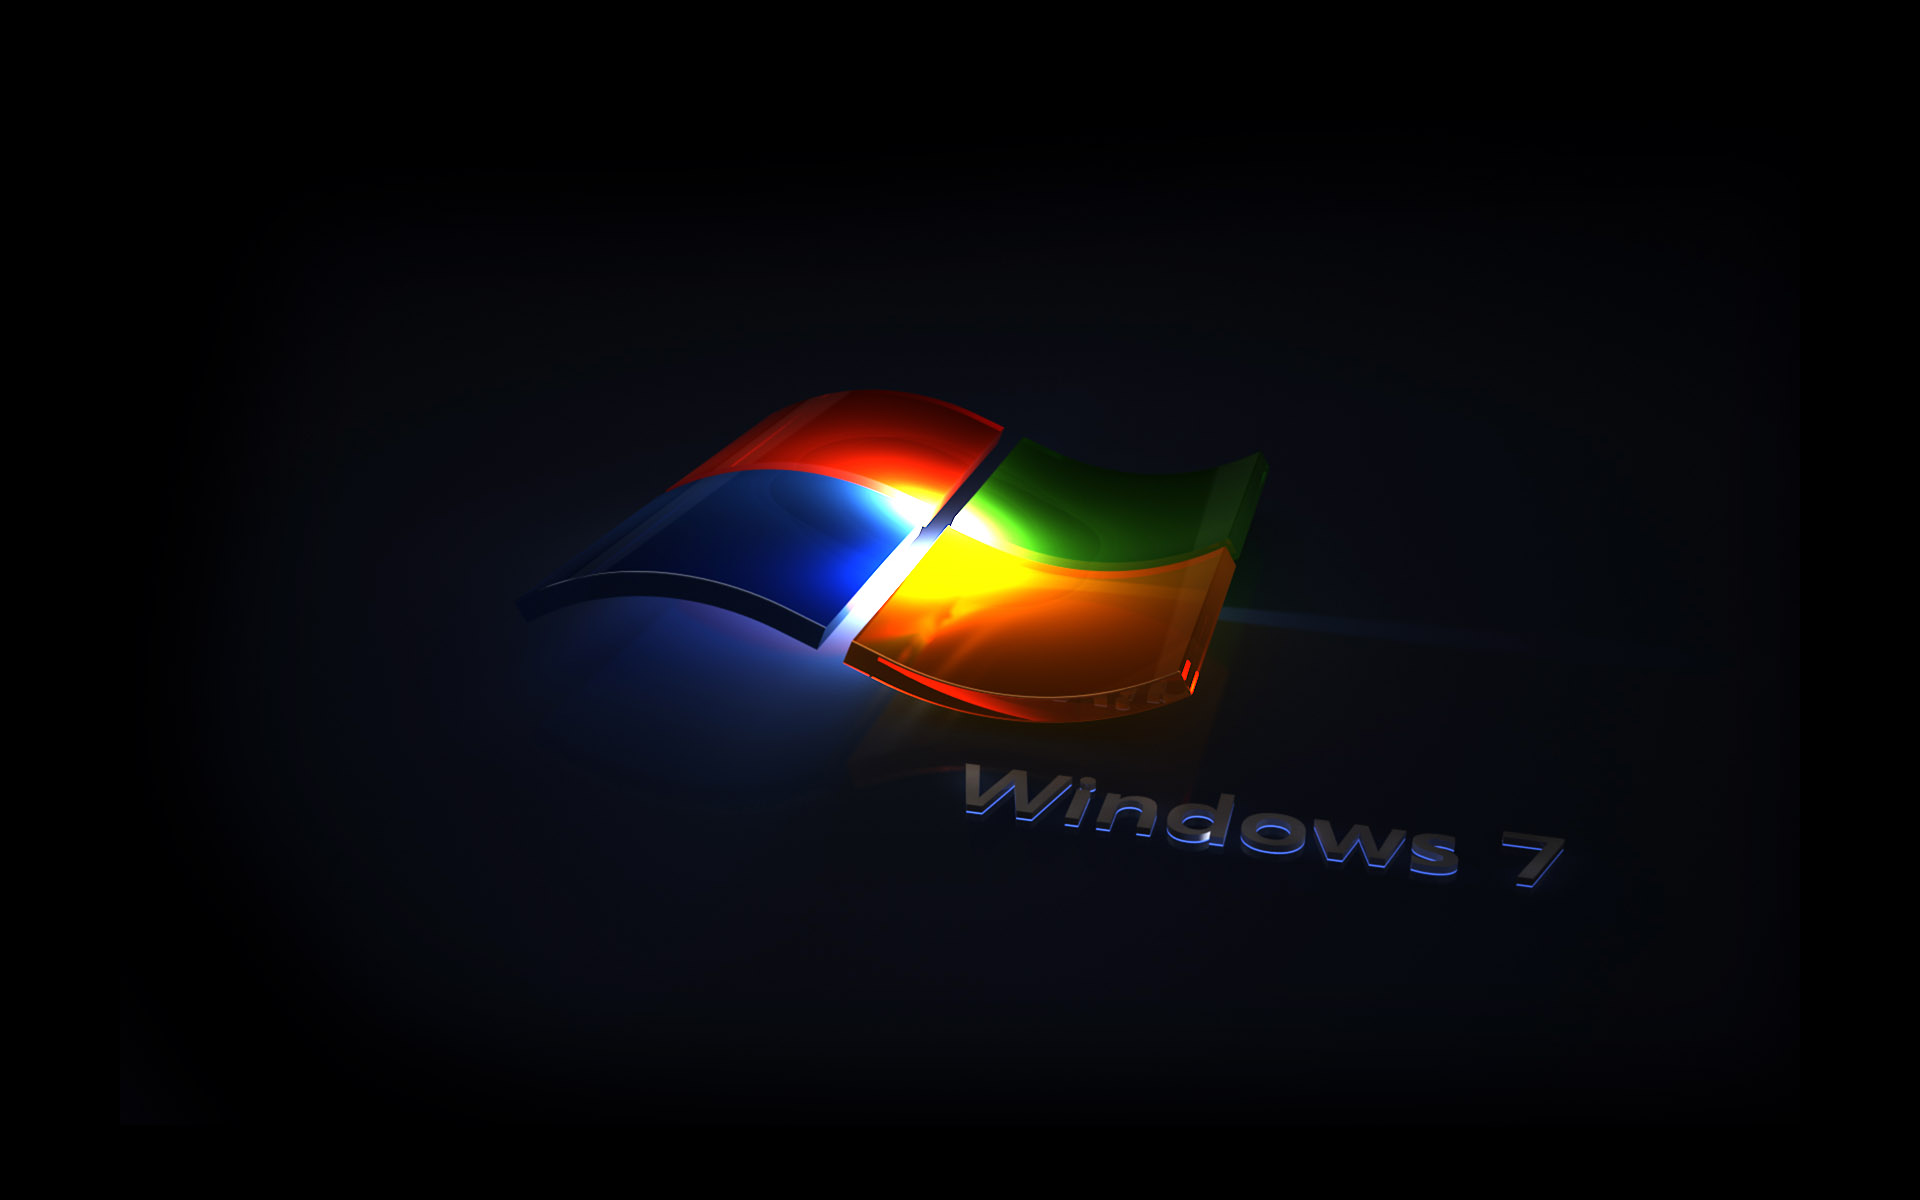 Windows_7_Wallpapers_10.jpg